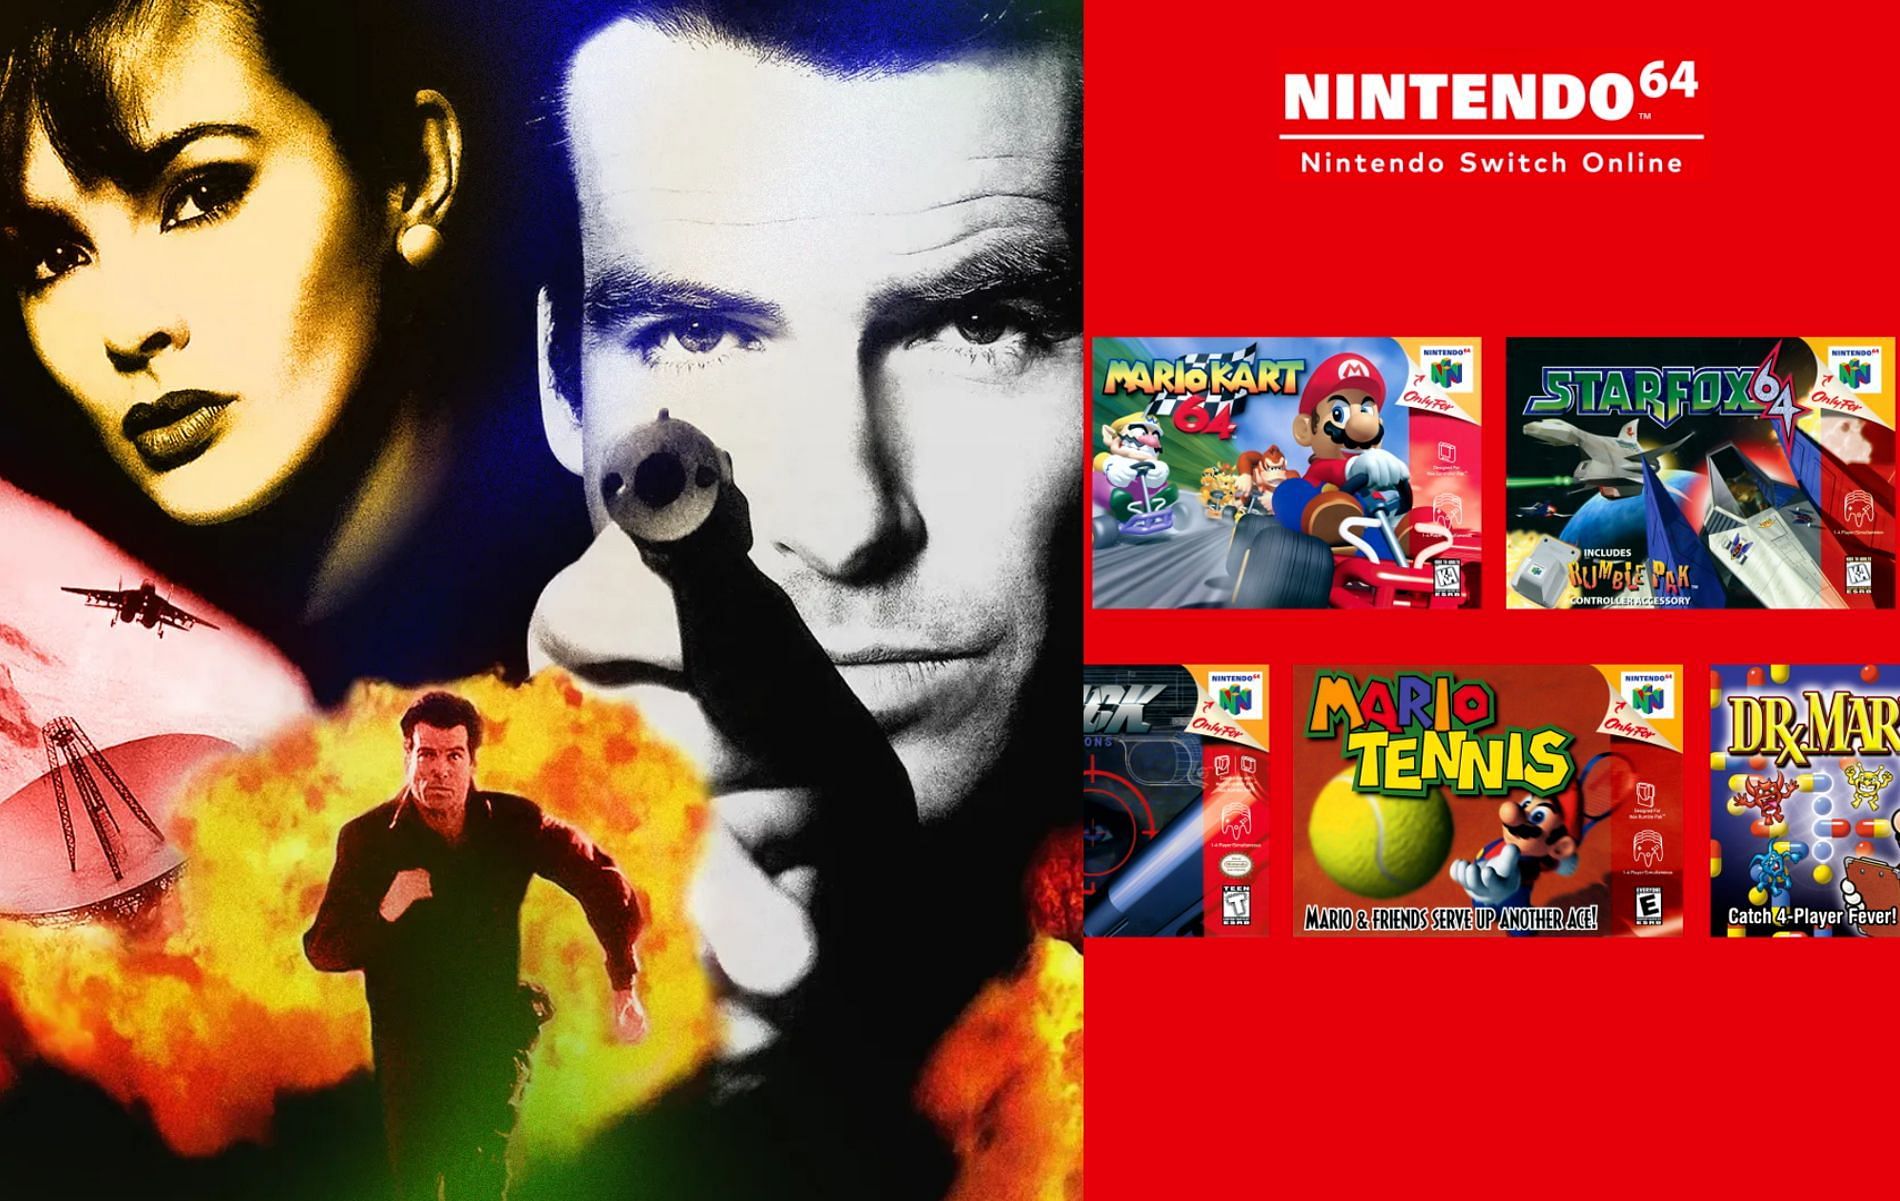 GoldenEye 007 - Nintendo 64 - Nintendo Switch Online Release Date